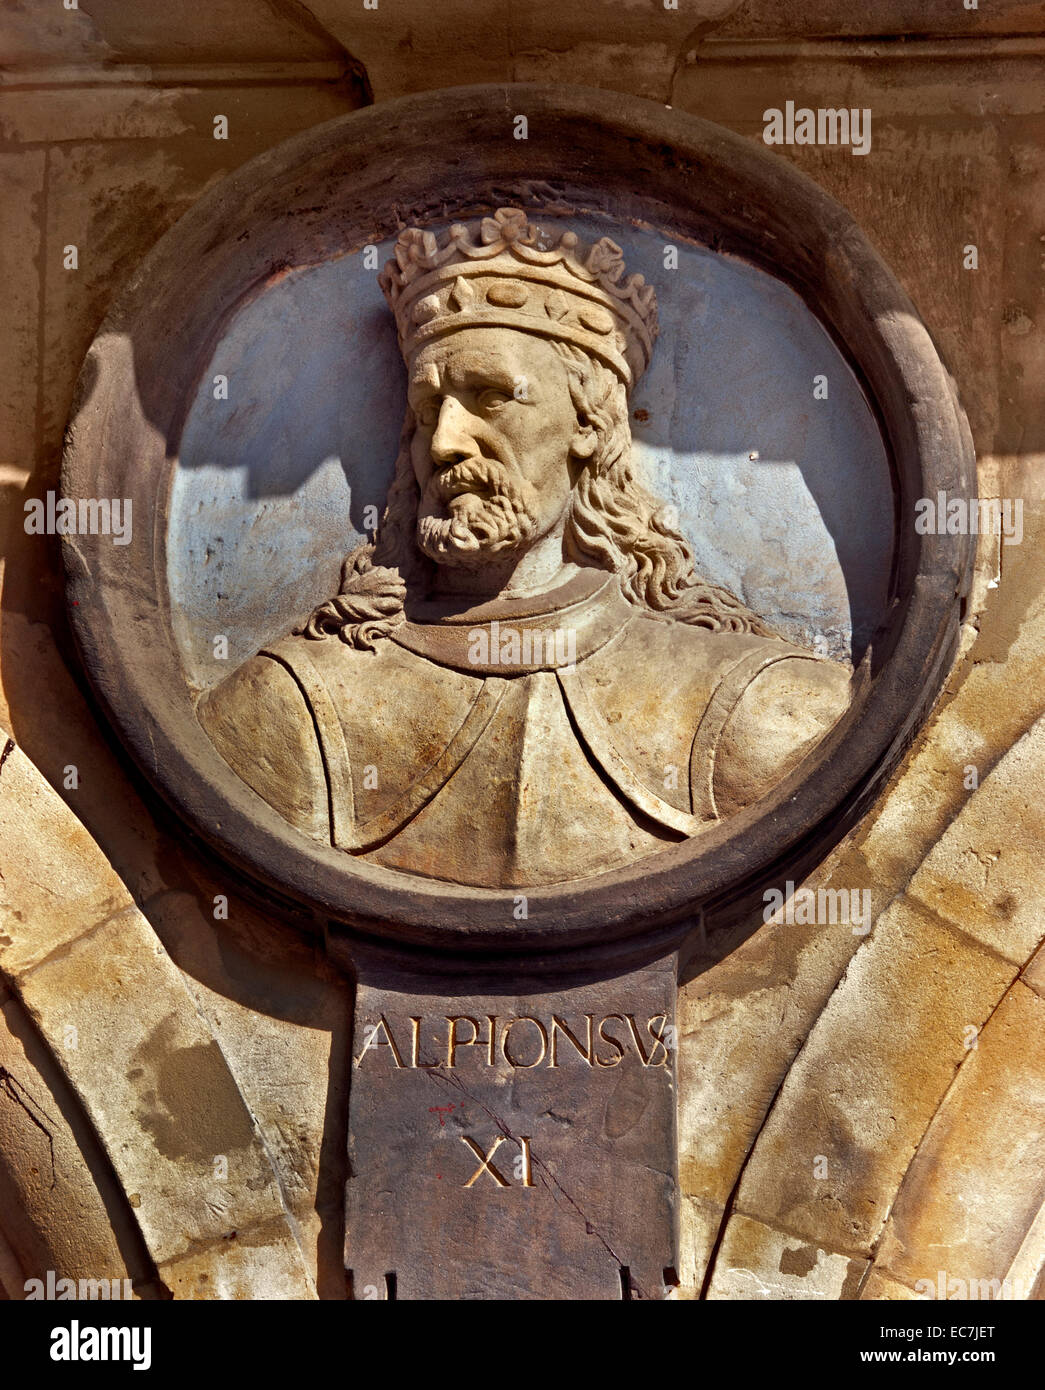 Alpionsvs XI - Alfonso XI ( 1311 - 1350) era il re di Castiglia e re spagnolo Royal Spagna ( Plaza Mayor Salamanca ) Foto Stock